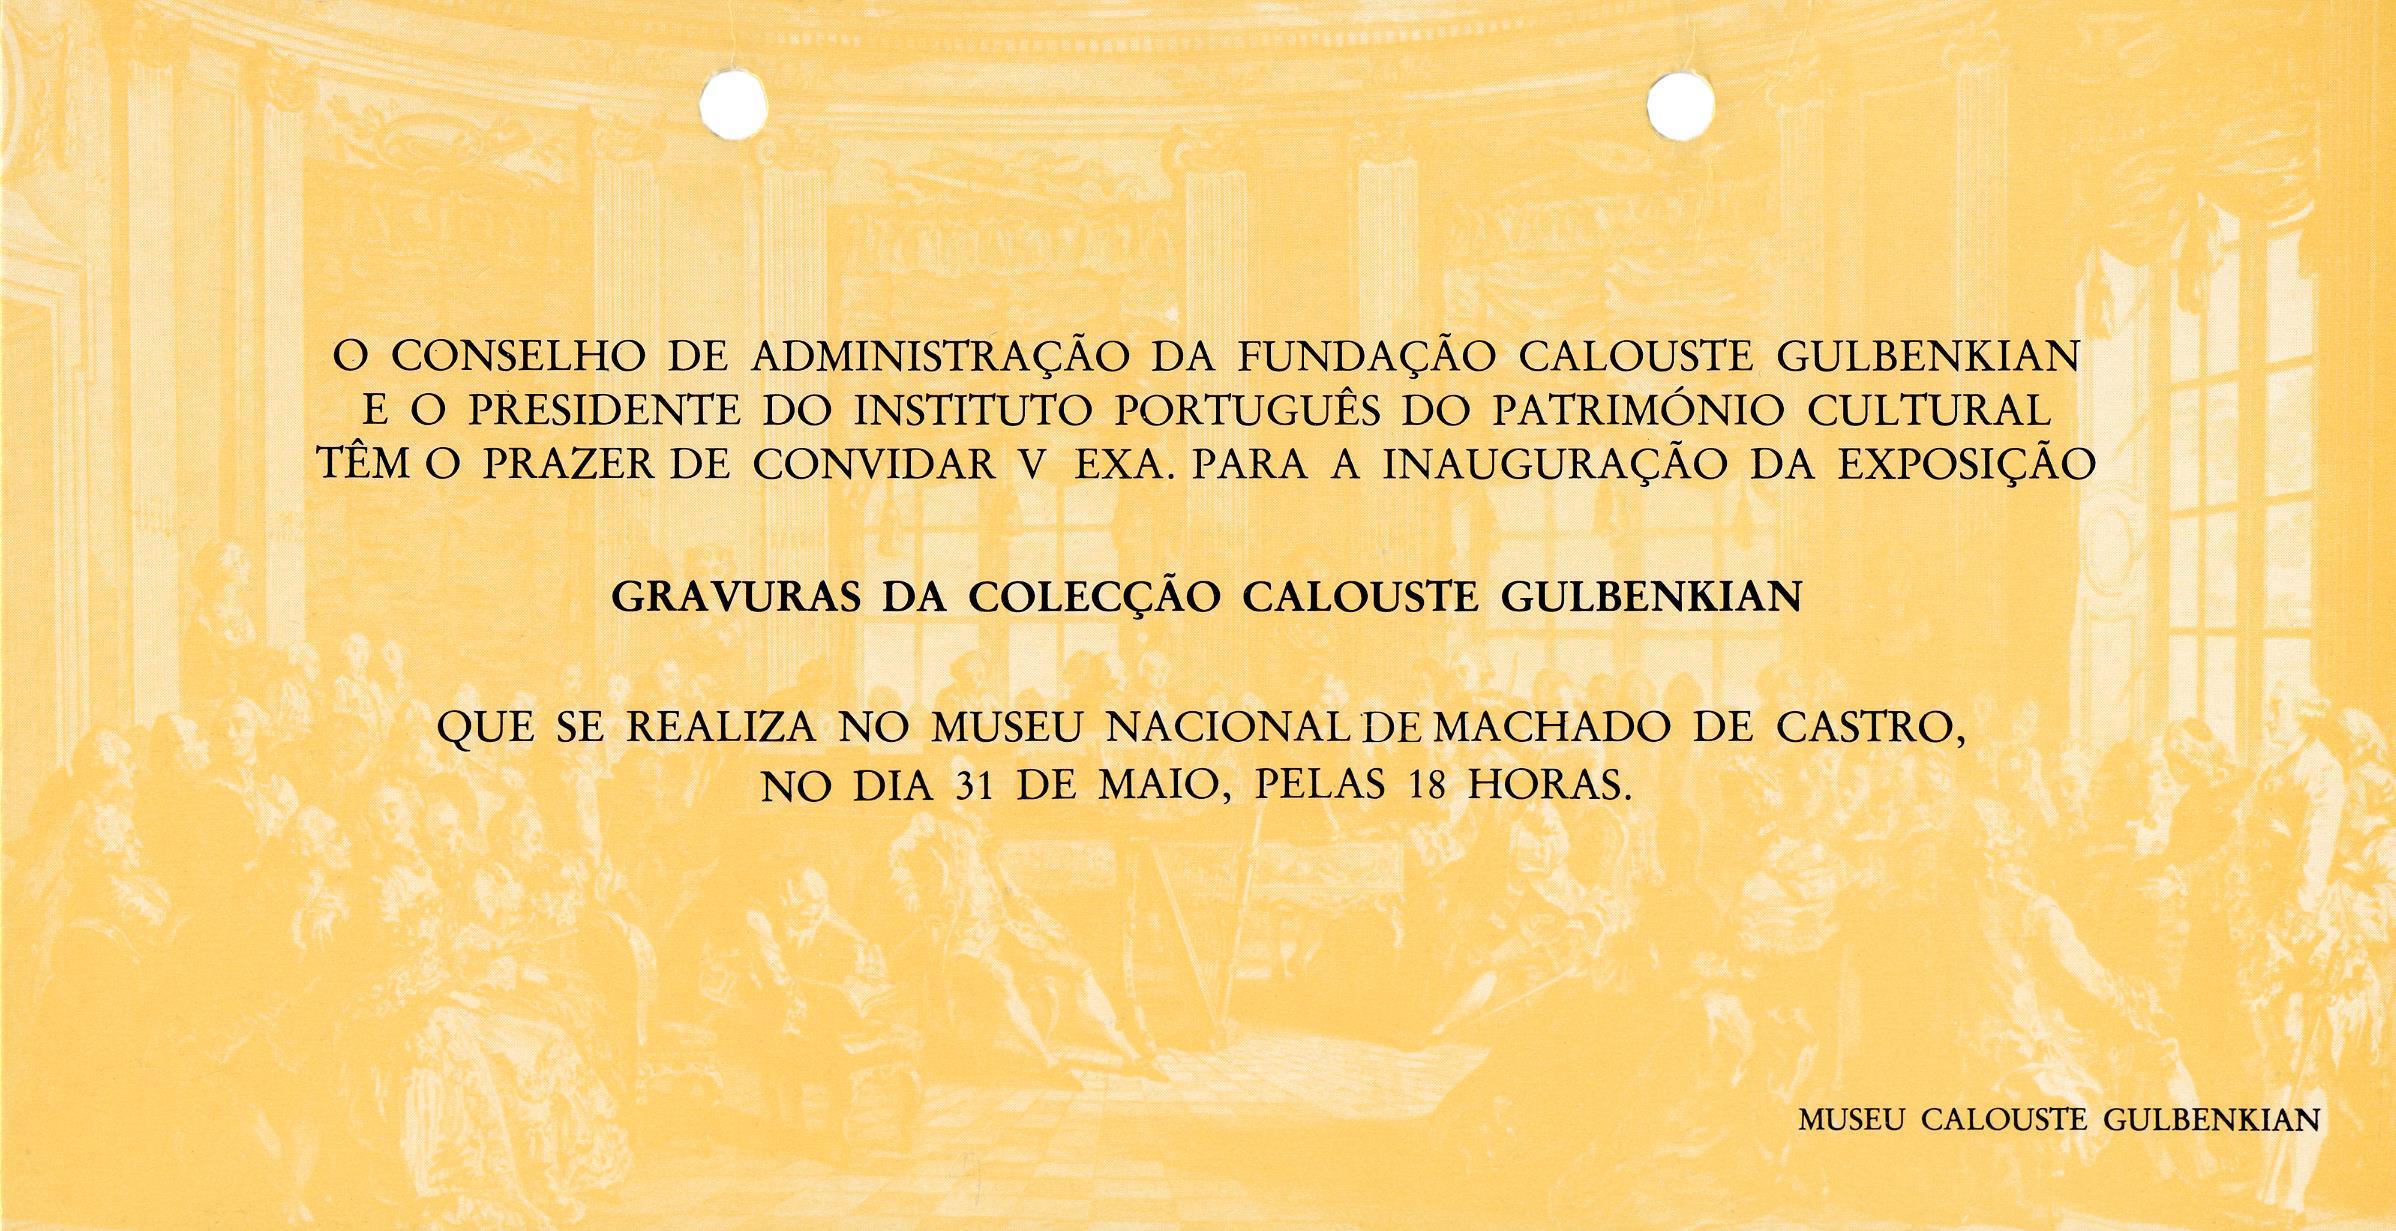 Gravuras da Colecção Calouste Gulbenkian